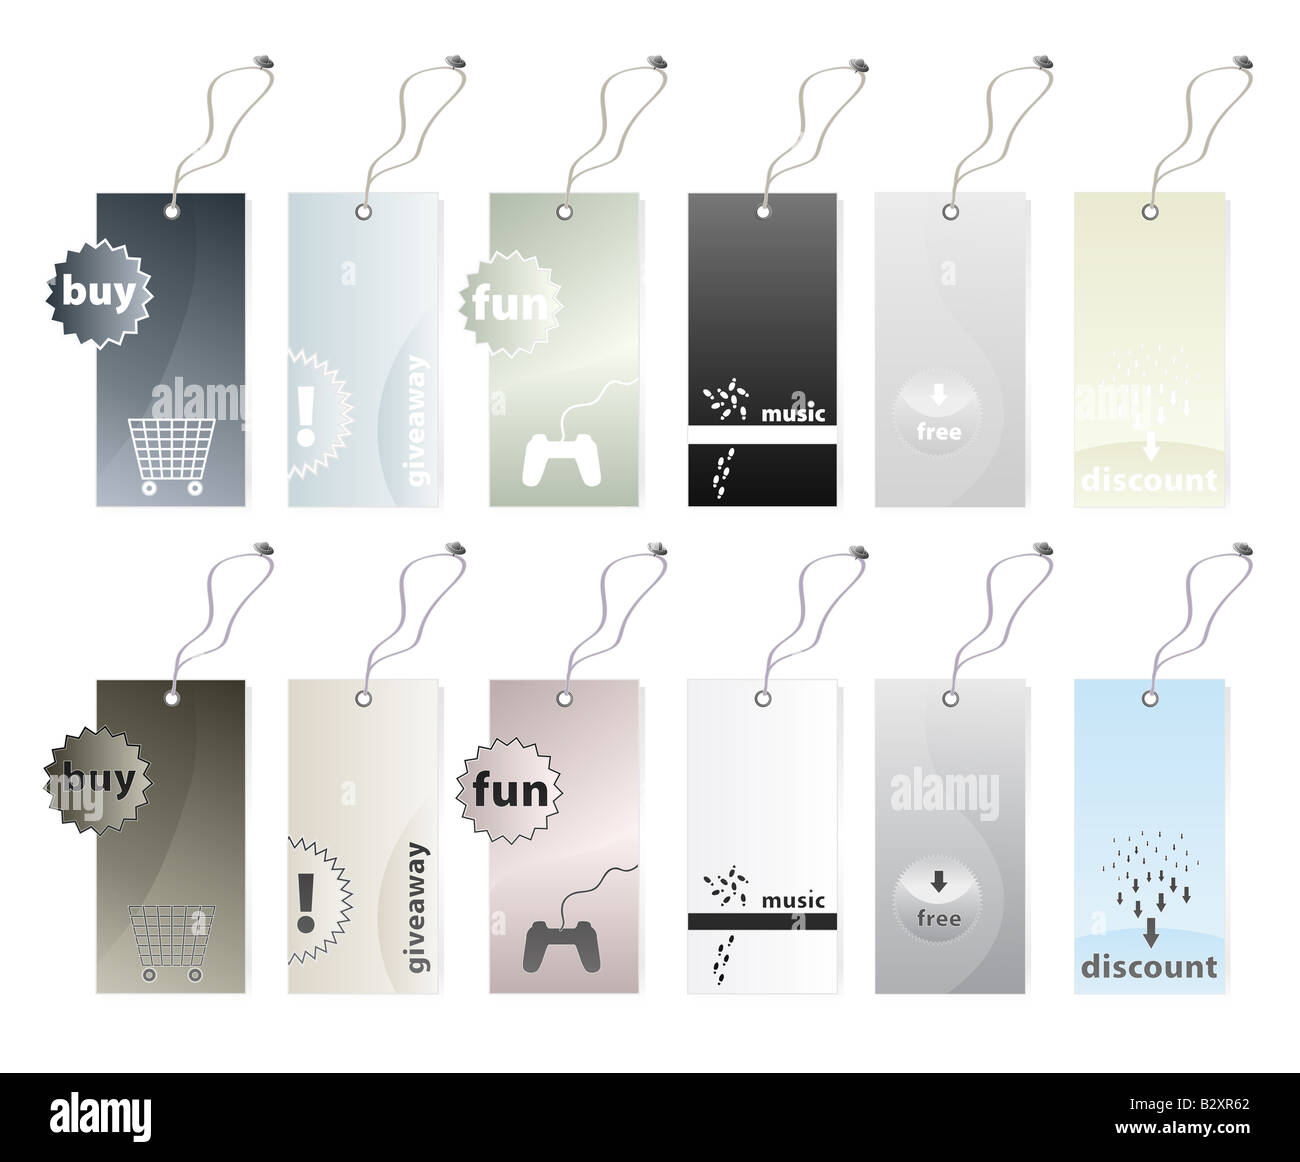 Illustrazione Vettoriale di sei diversi tag shopping nei toni della terra le variazioni di colore in due versioni 12 tag in tutti i Foto Stock